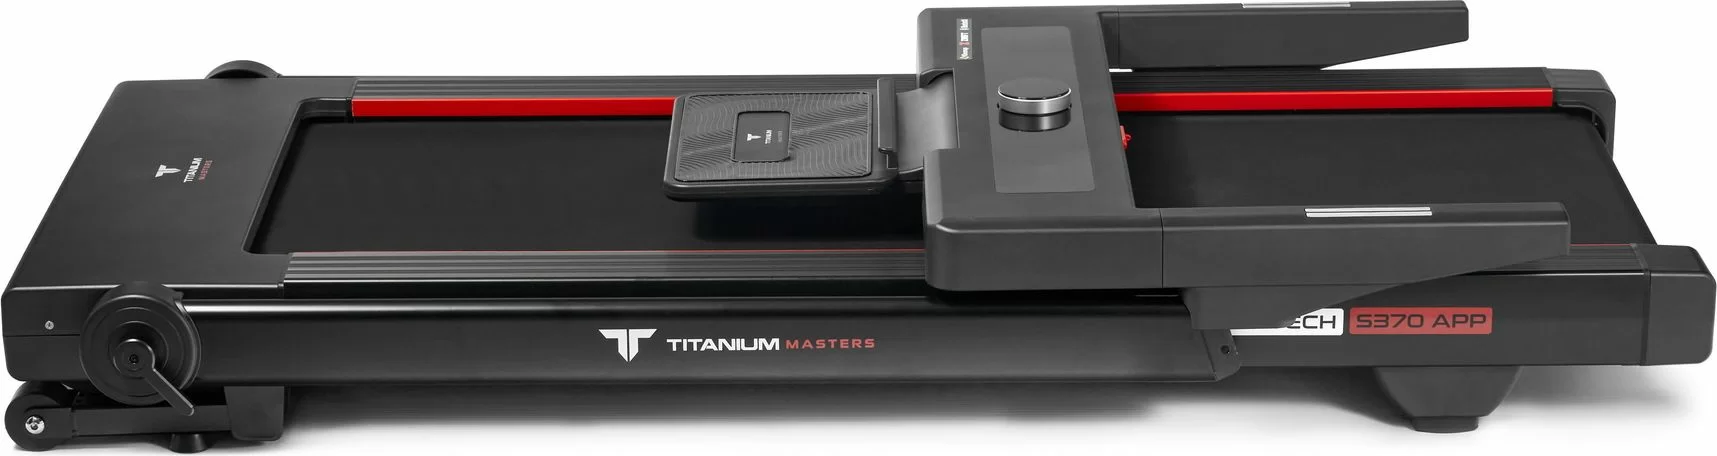 Реальное фото Беговая дорожка Titanium Masters Slimtech S370 APP от магазина СпортСЕ